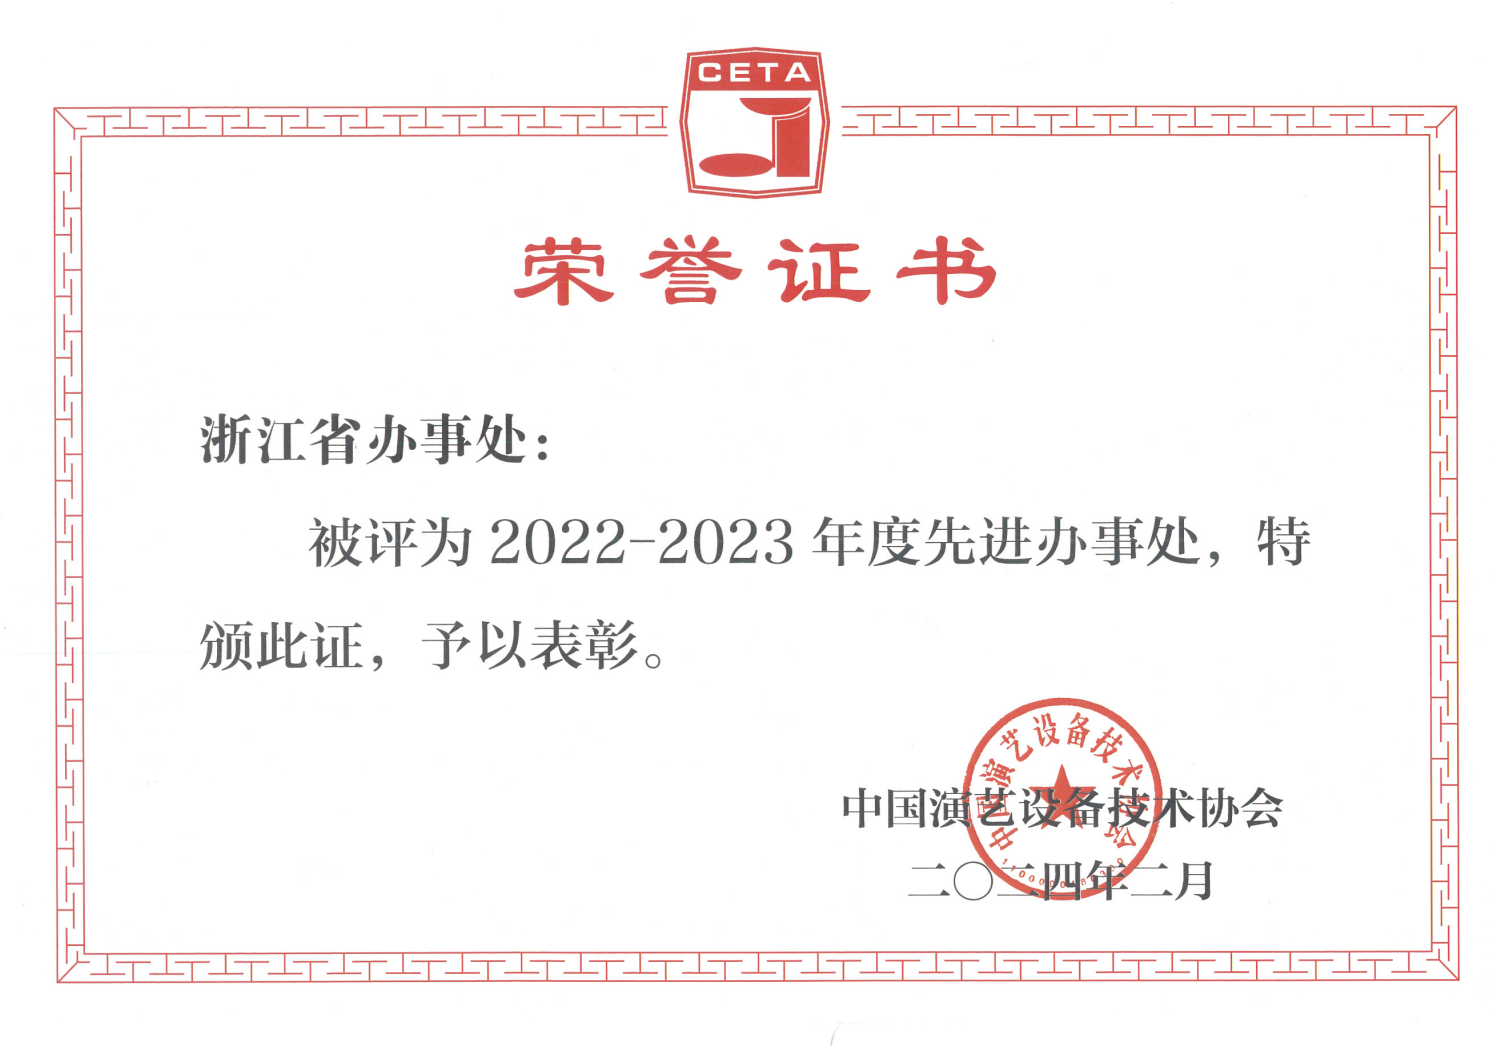 2022-2023年度先进办事处.png